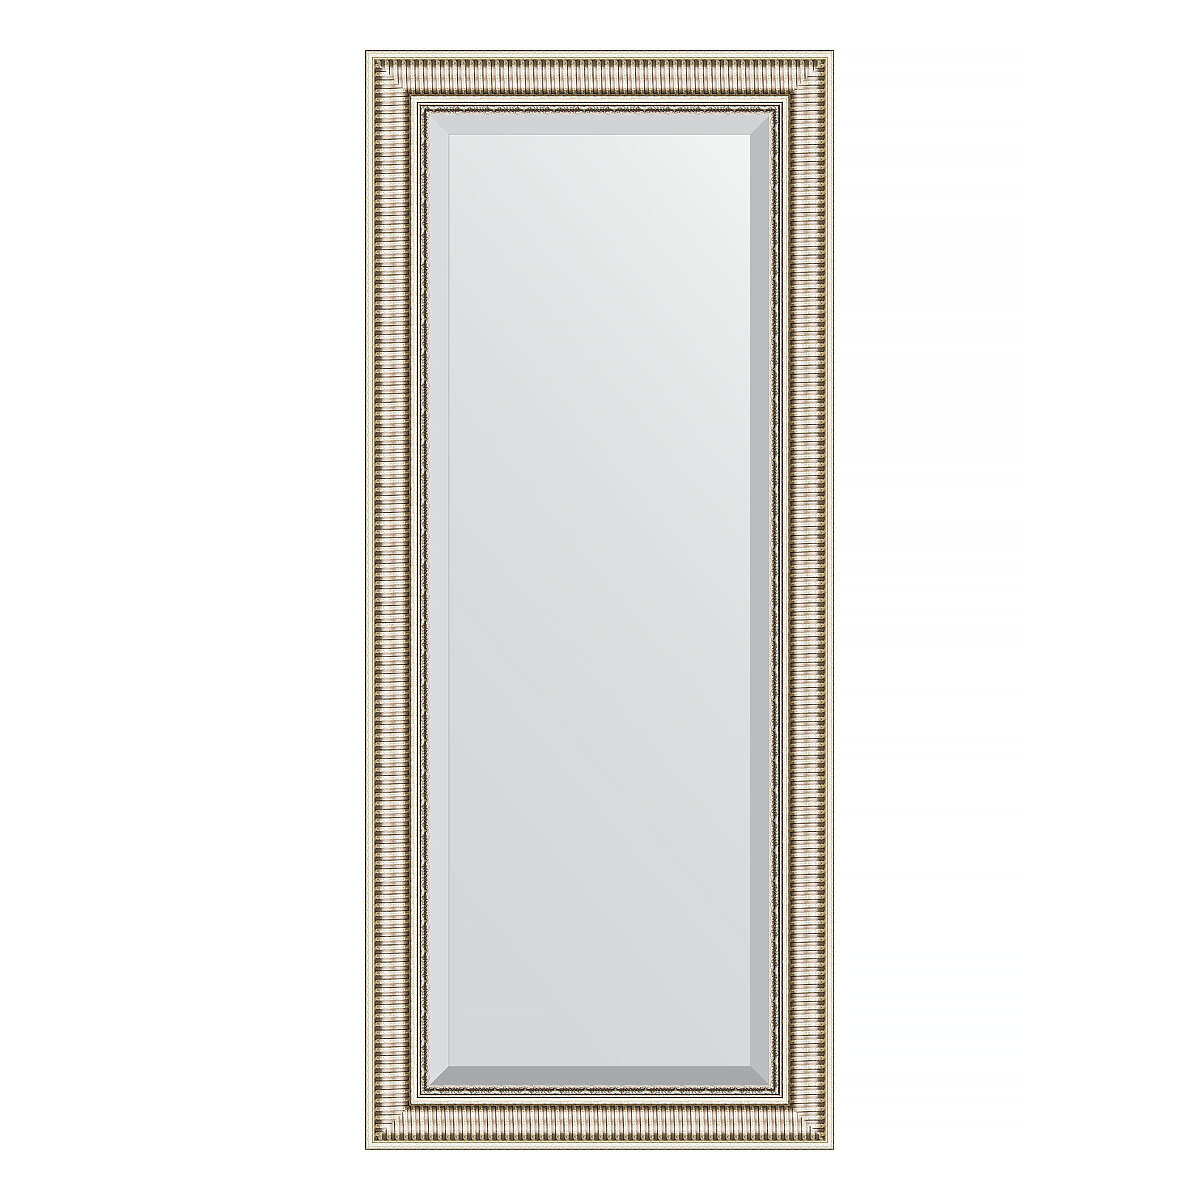 Зеркало настенное с фацетом EVOFORM в багетной раме серебряный акведук, 67х157 см, для гостиной, прихожей, спальни и ванной комнаты, BY 1288